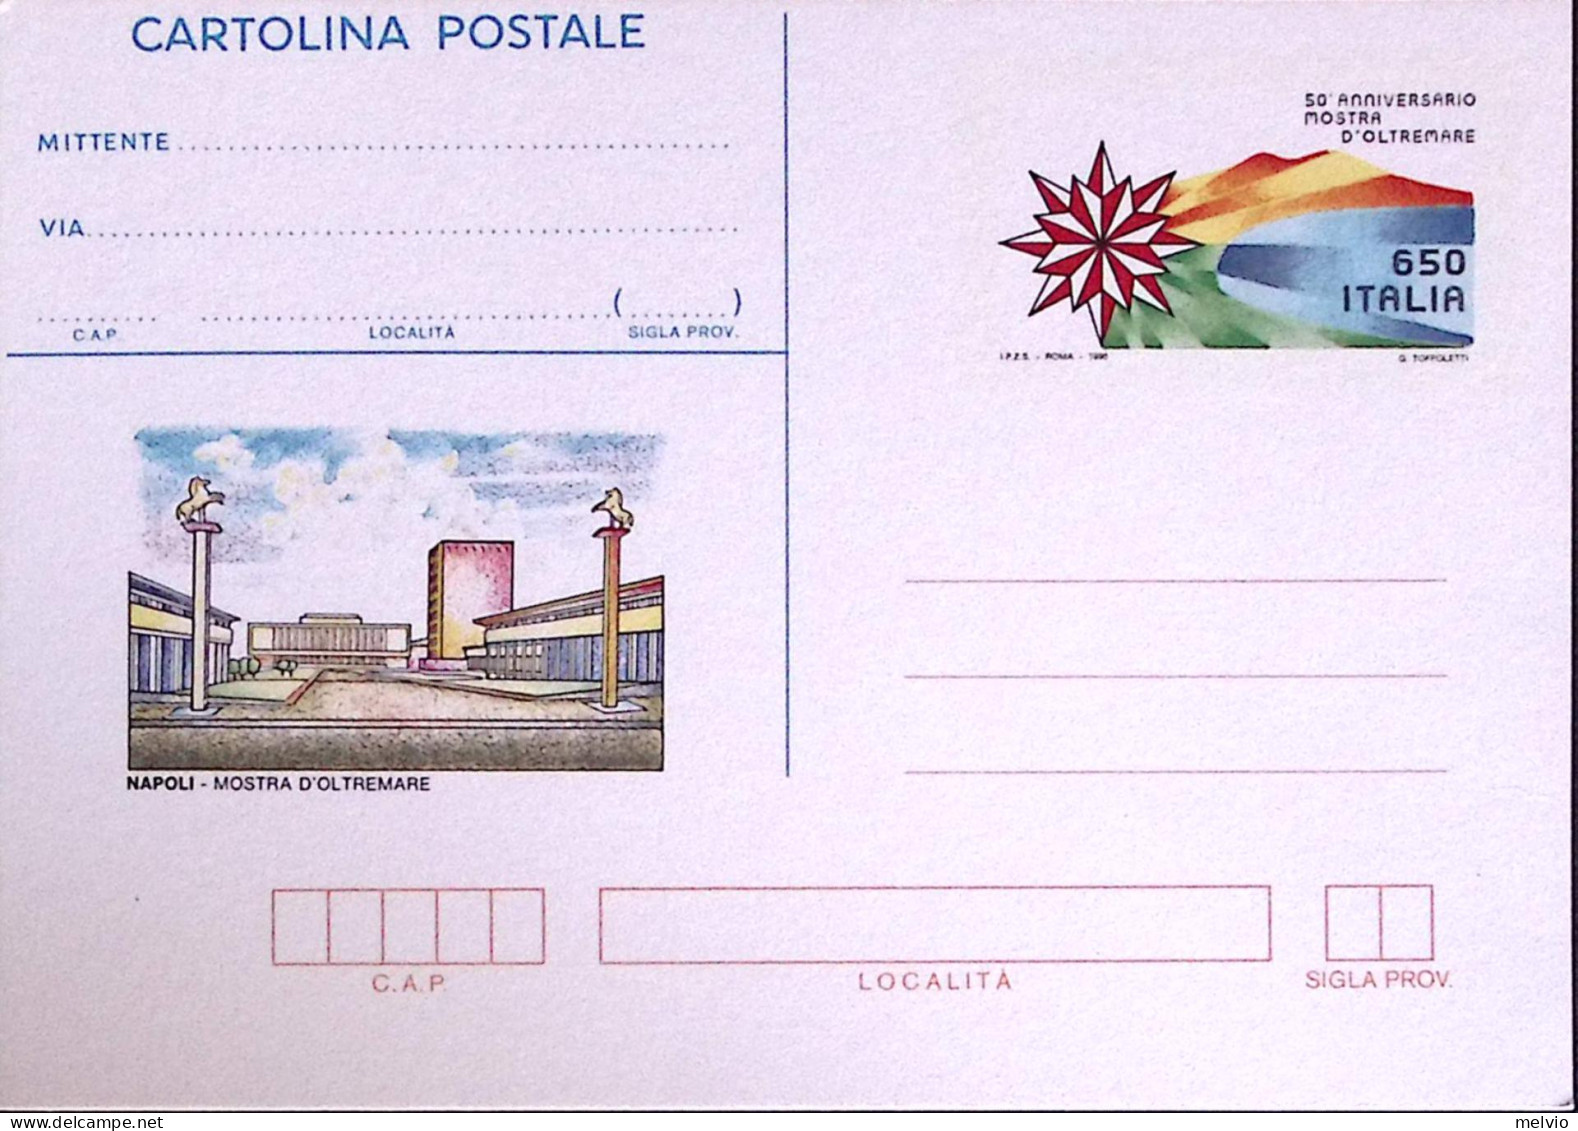 1990-Cartolina Postale Lire 650 Mostra D'oltremare Nuova - Entero Postal